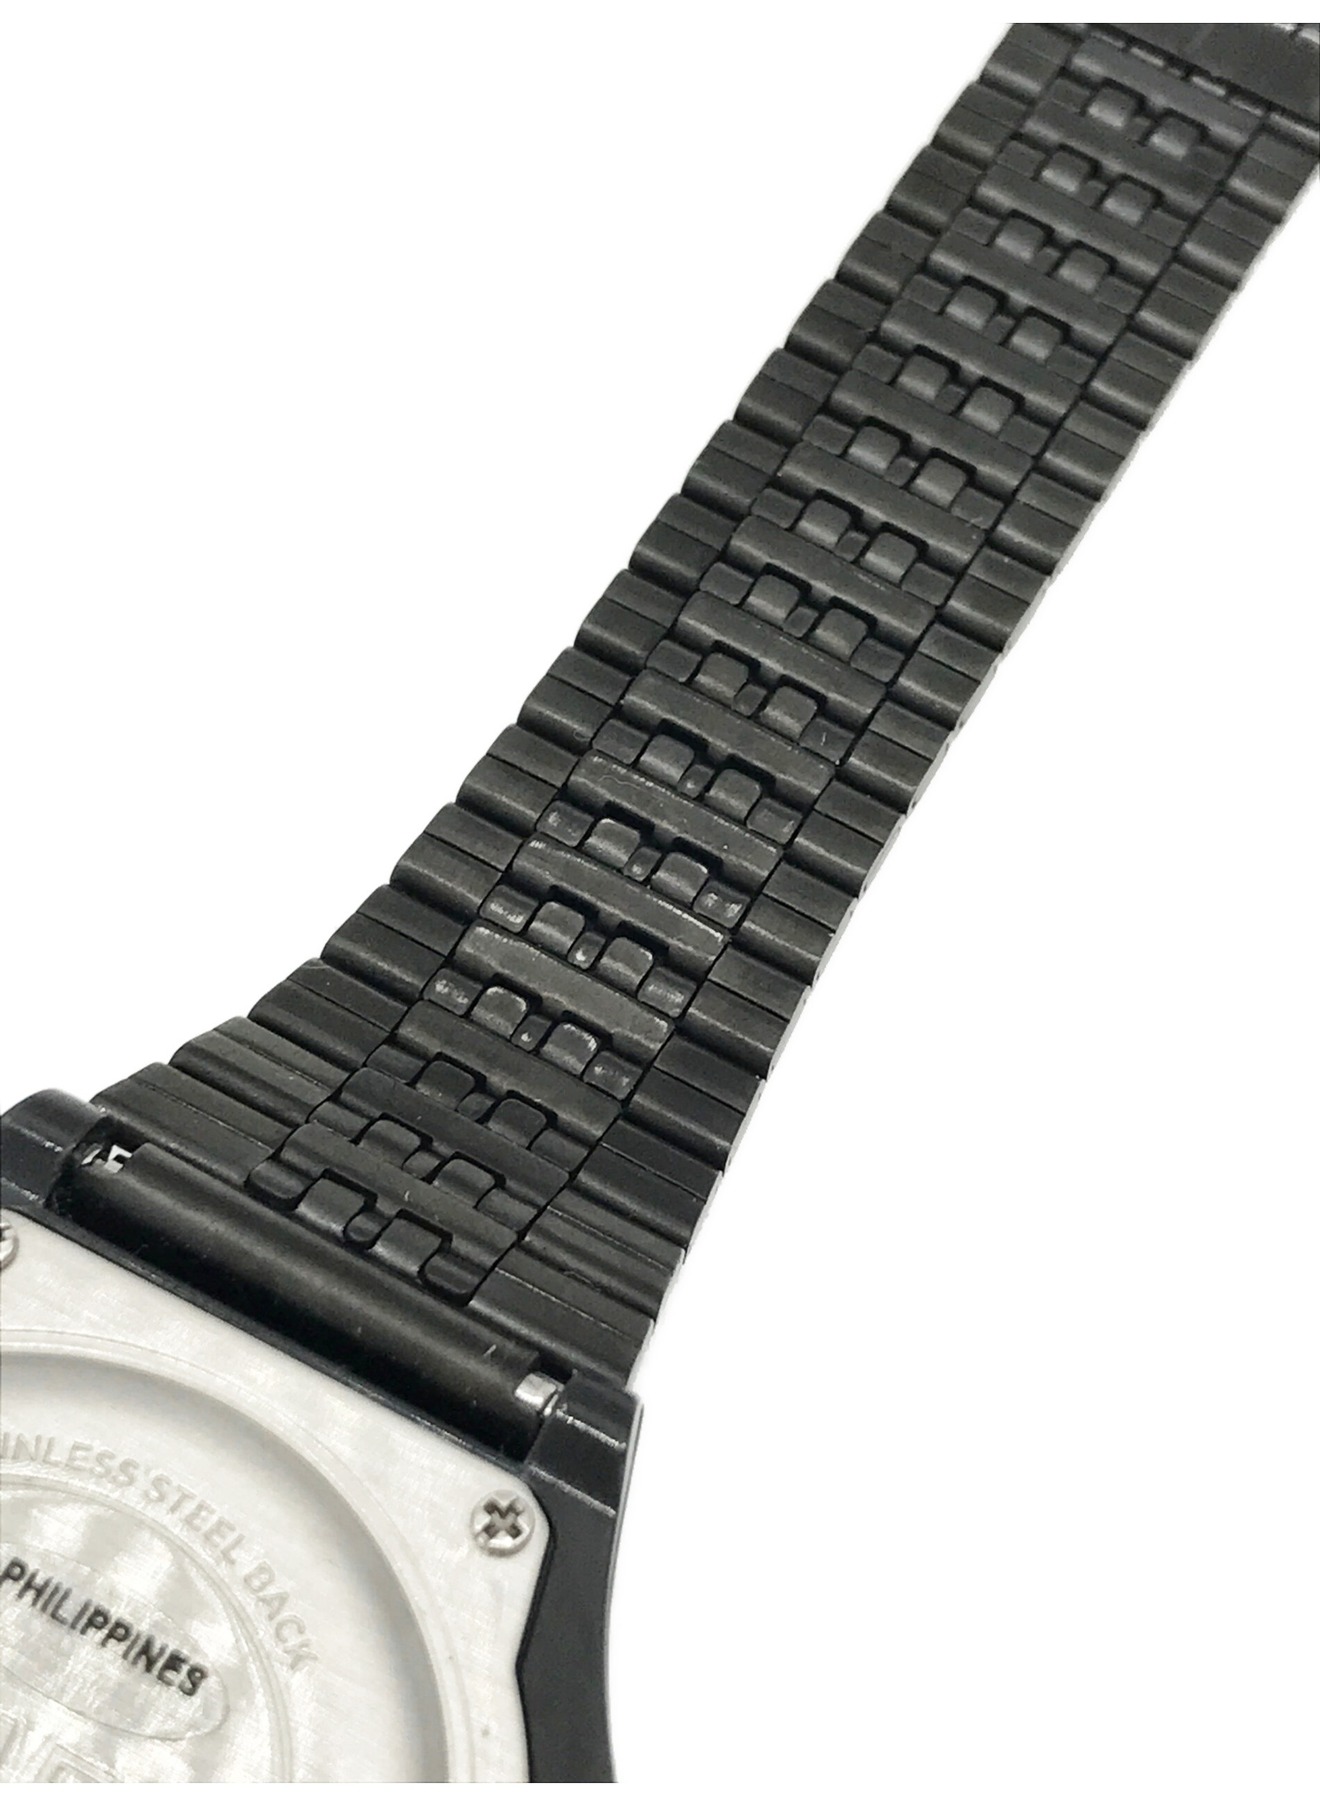 TIMEX (タイメックス) WIND AND SEA (ウィンダンシー) 腕時計 サイズ:下記参照